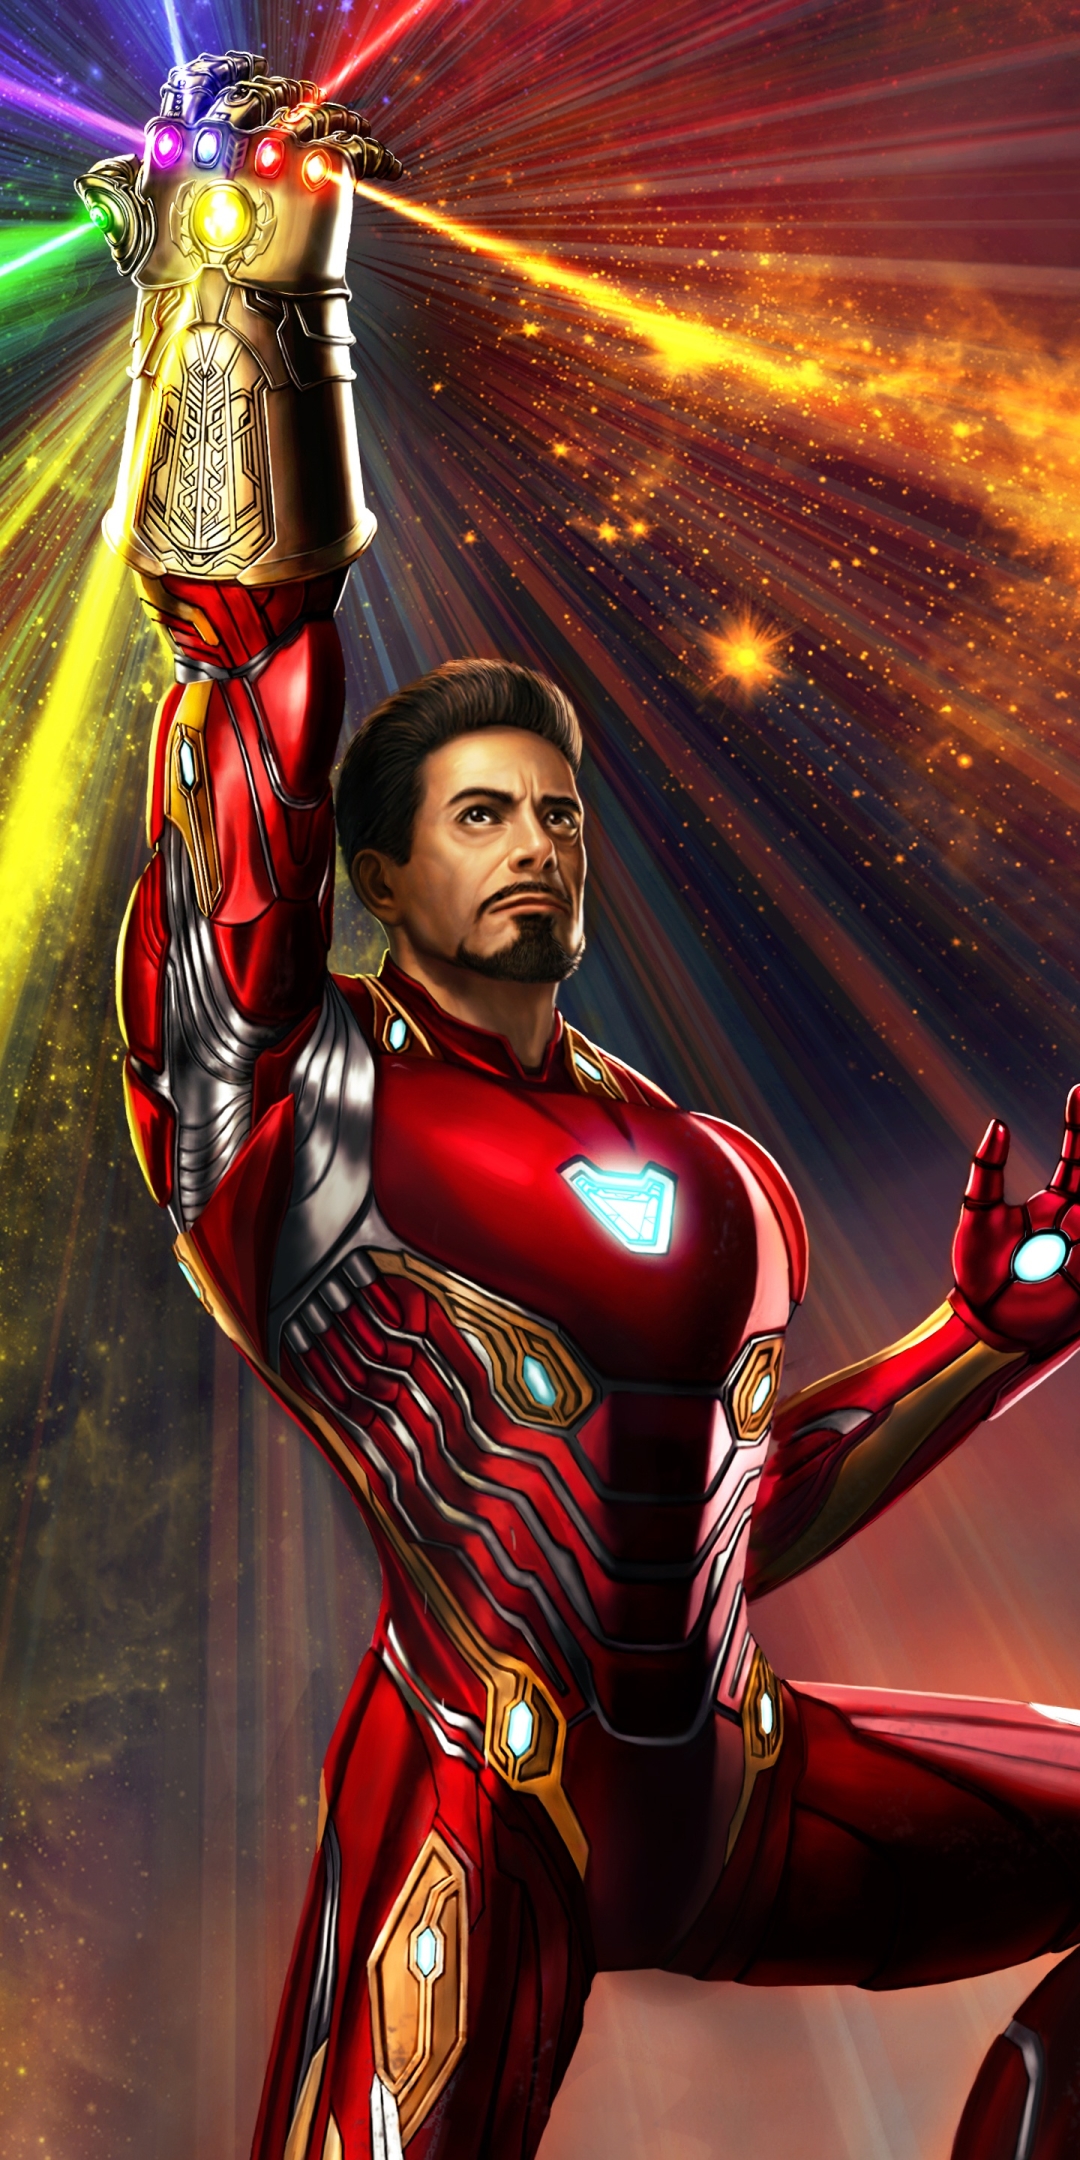 Descarga gratuita de fondo de pantalla para móvil de Los Vengadores, Películas, Hombre De Acero, Tony Stark, Guantelete Infinito, Vengadores: Endgame.